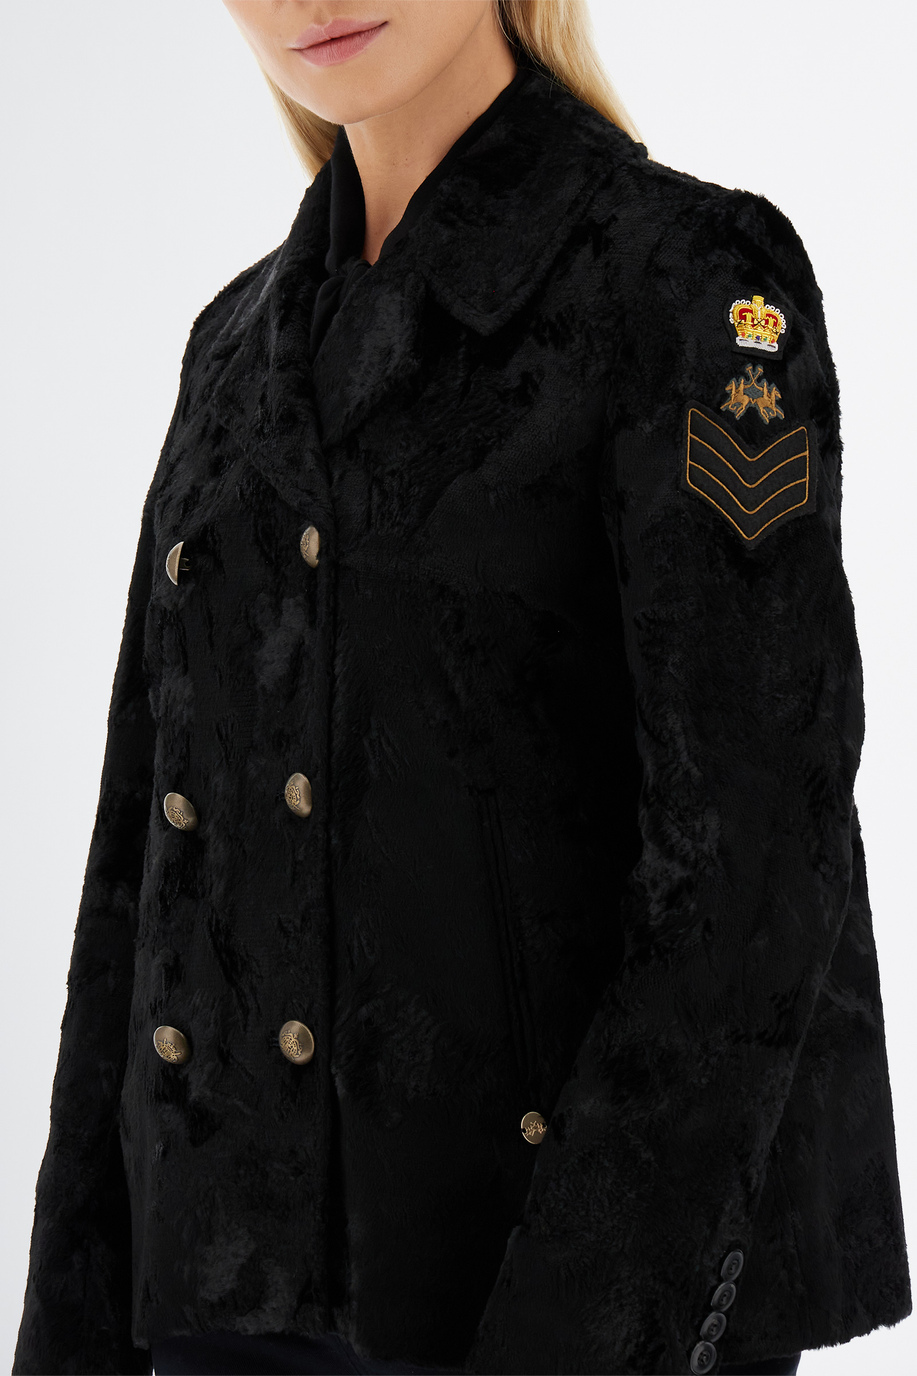 Giacca donna a maniche lunghe England con pelliccia - Look invernali per lei | La Martina - Official Online Shop